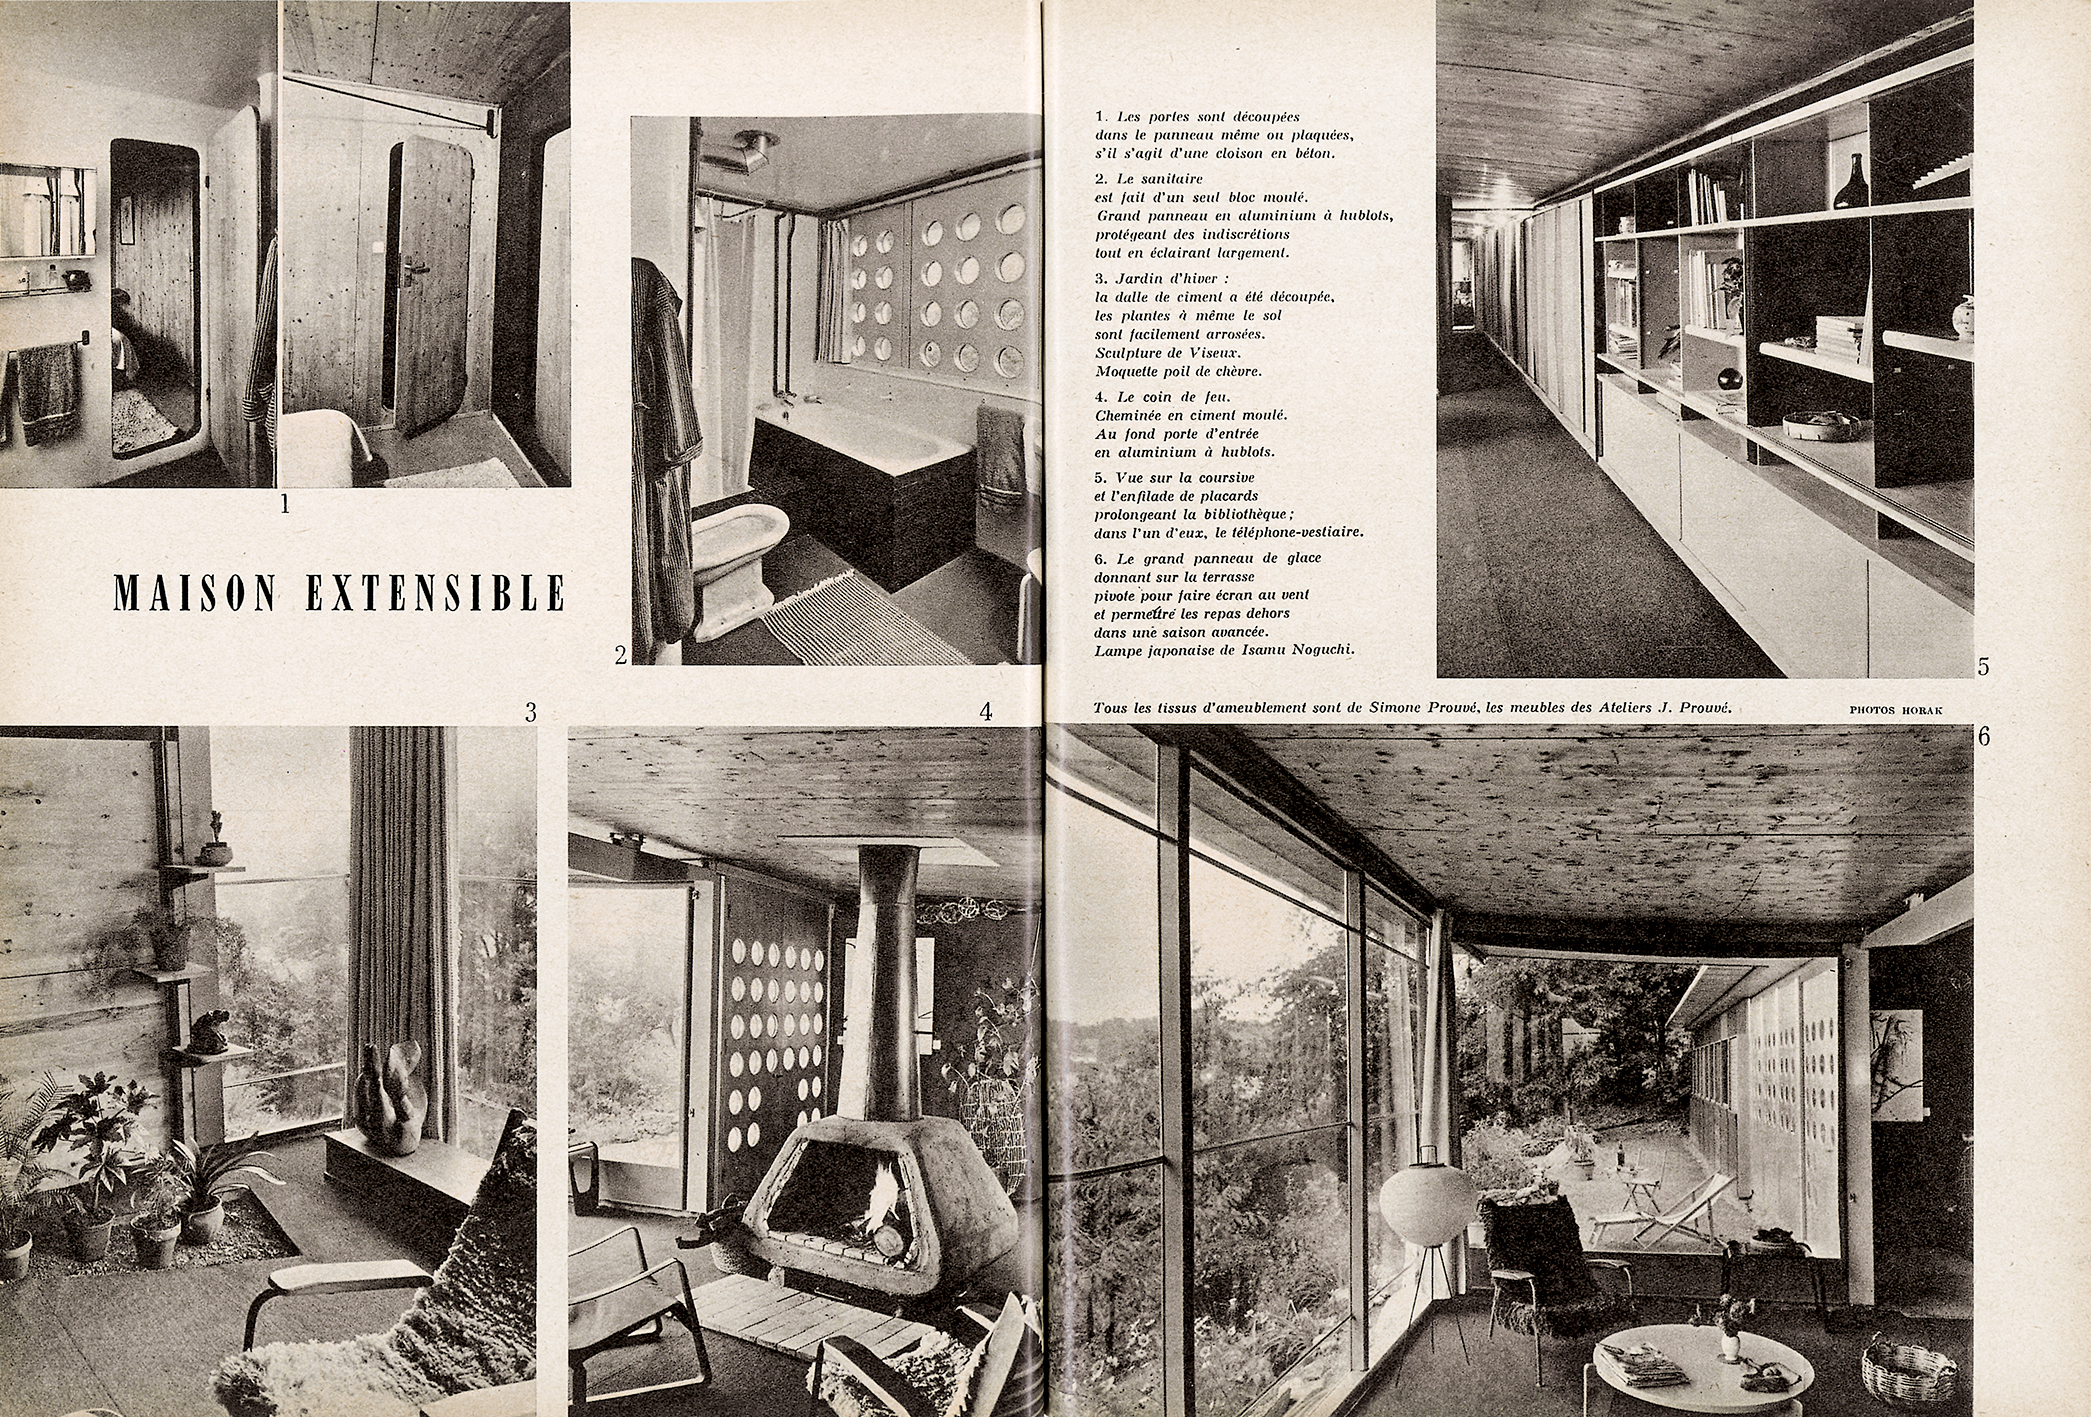 La maison J. Prouvé, « Maison extensible », <i>Arts ménagers</i>, n° 85, janvier 1957.